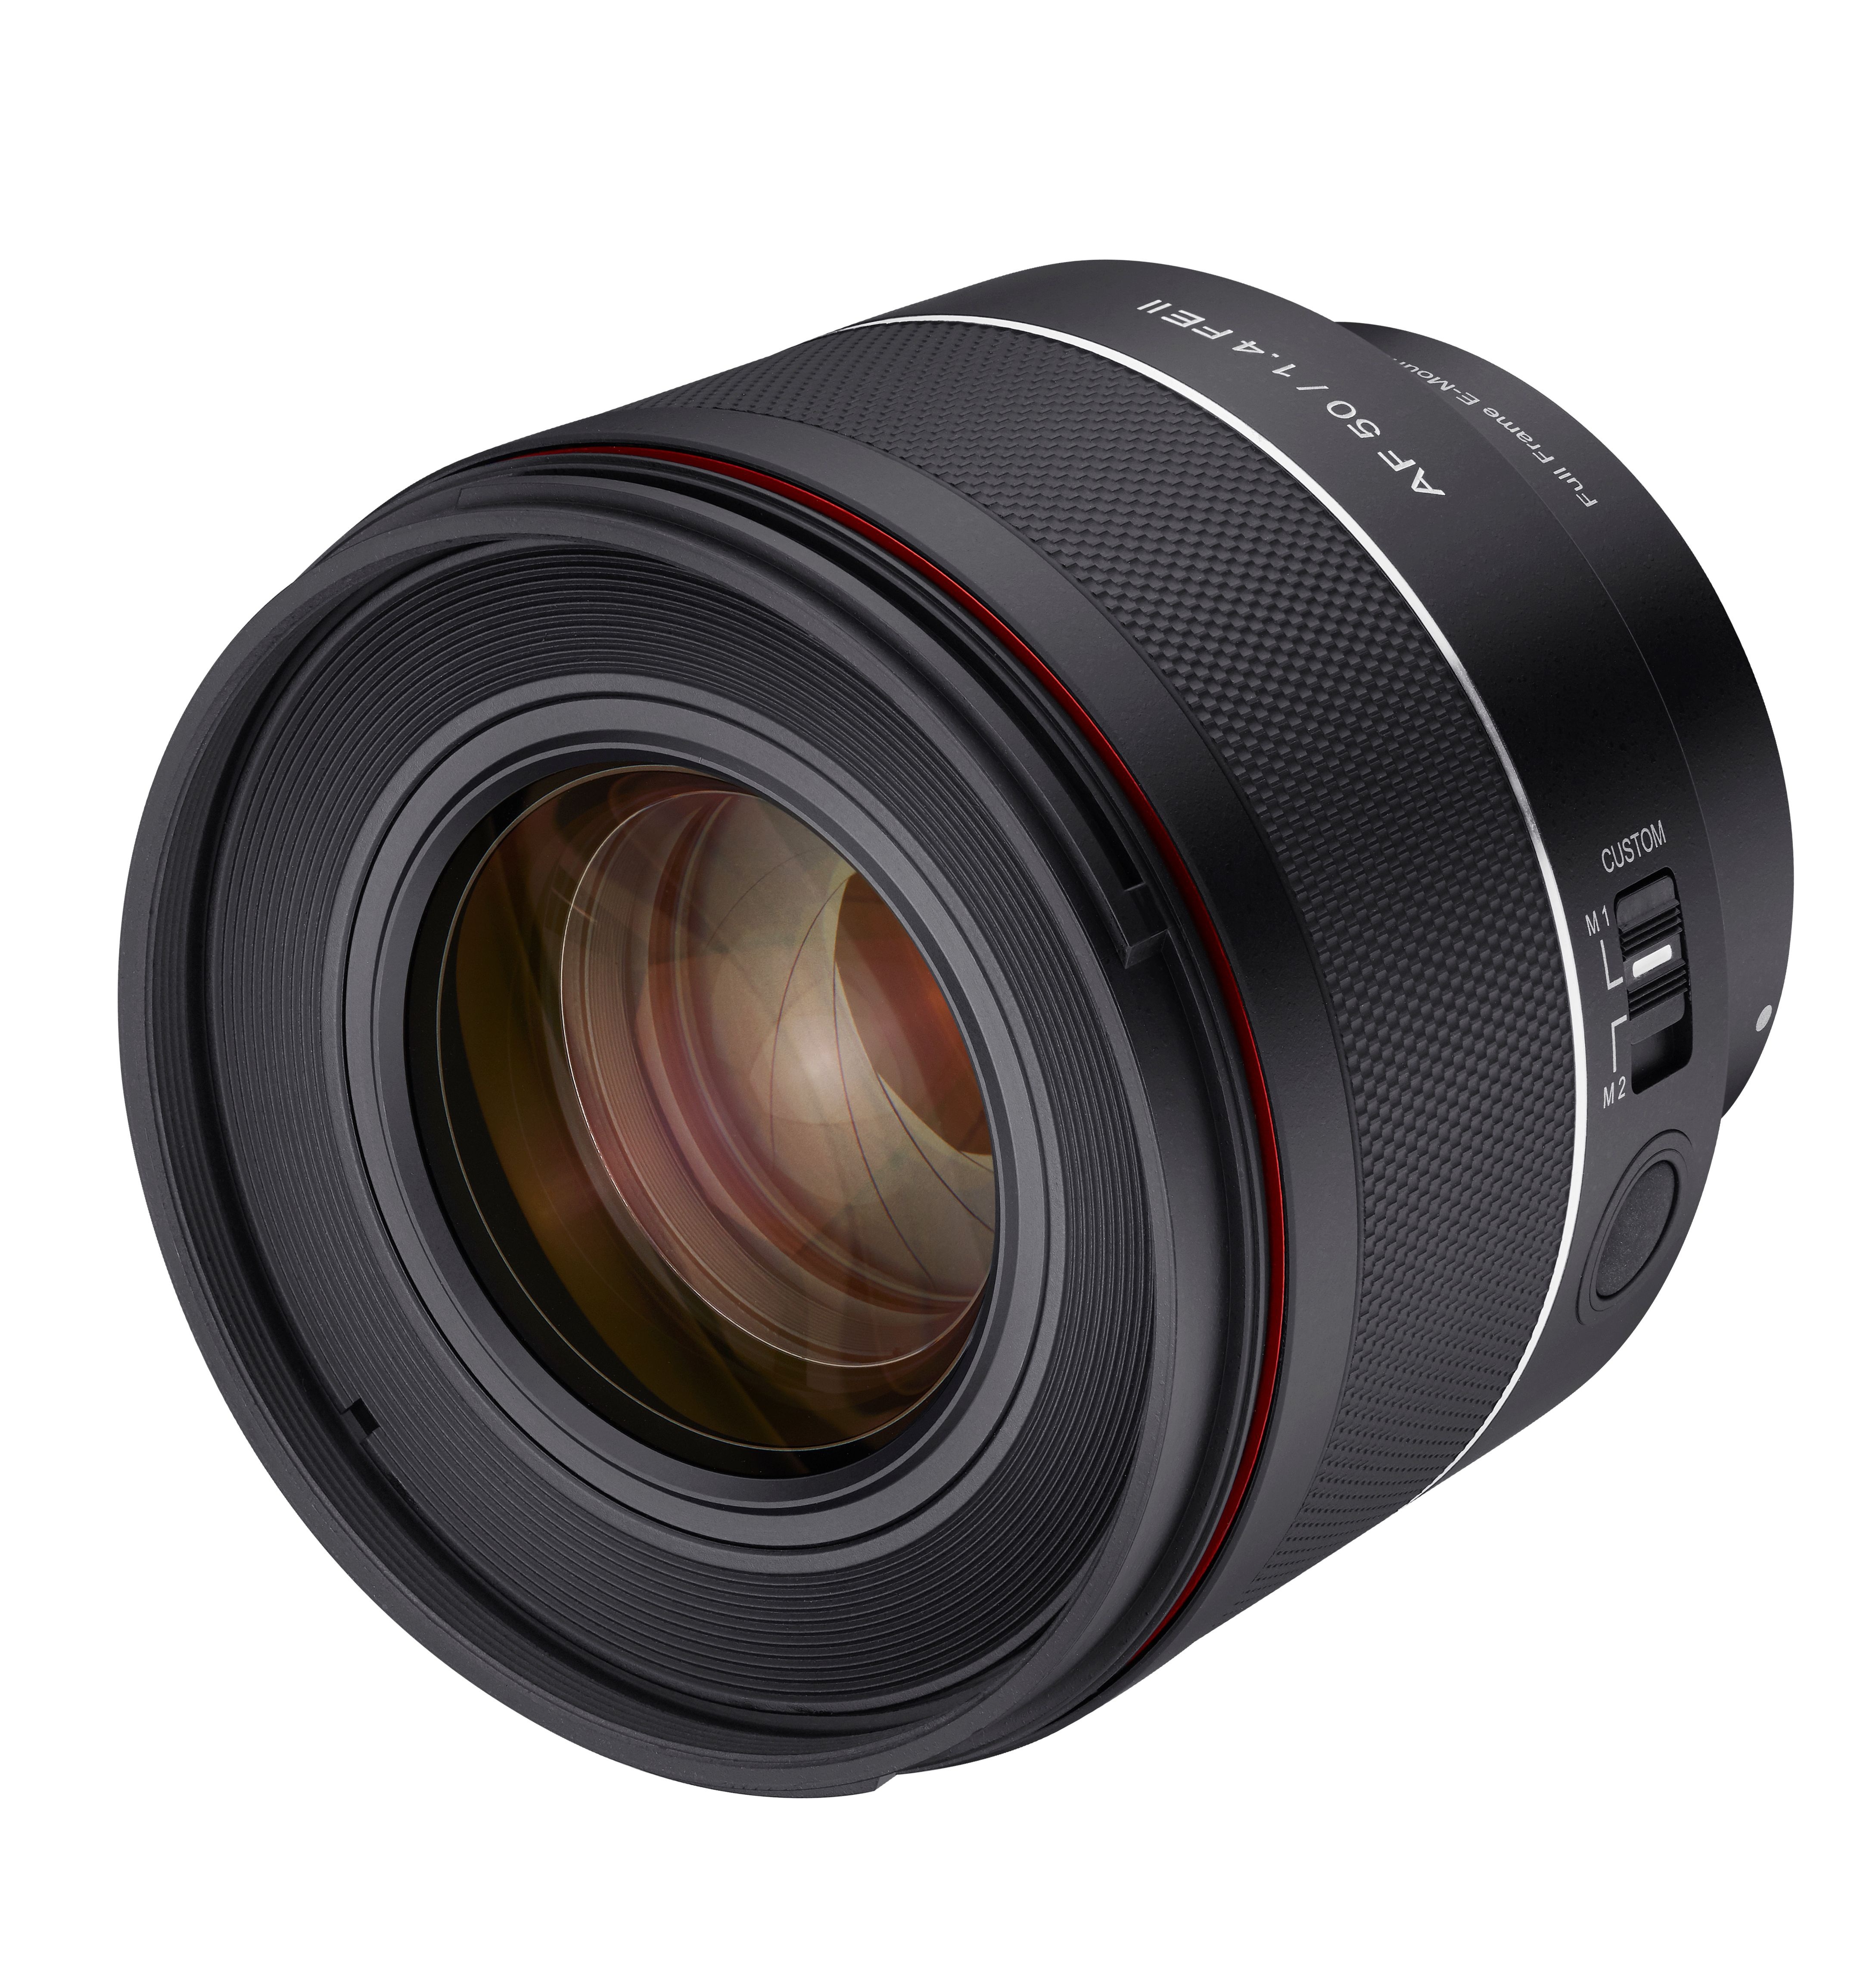 Samyang AF 50mm f/1.4 FE MK2 Lens for Sony E